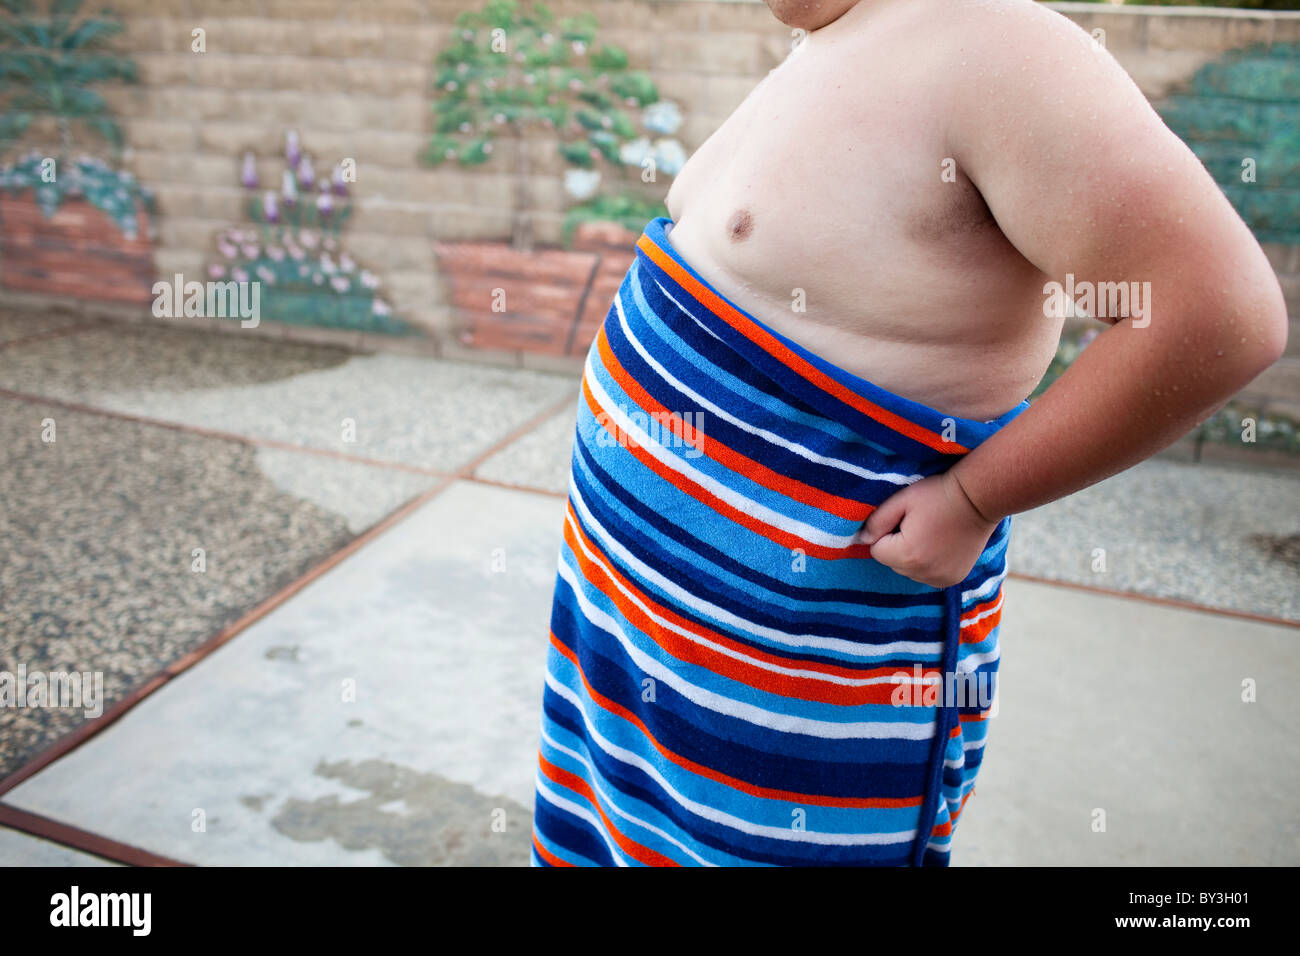 Hughson, California, United States. Un adolescent obèse enveloppé dans une serviette. Banque D'Images